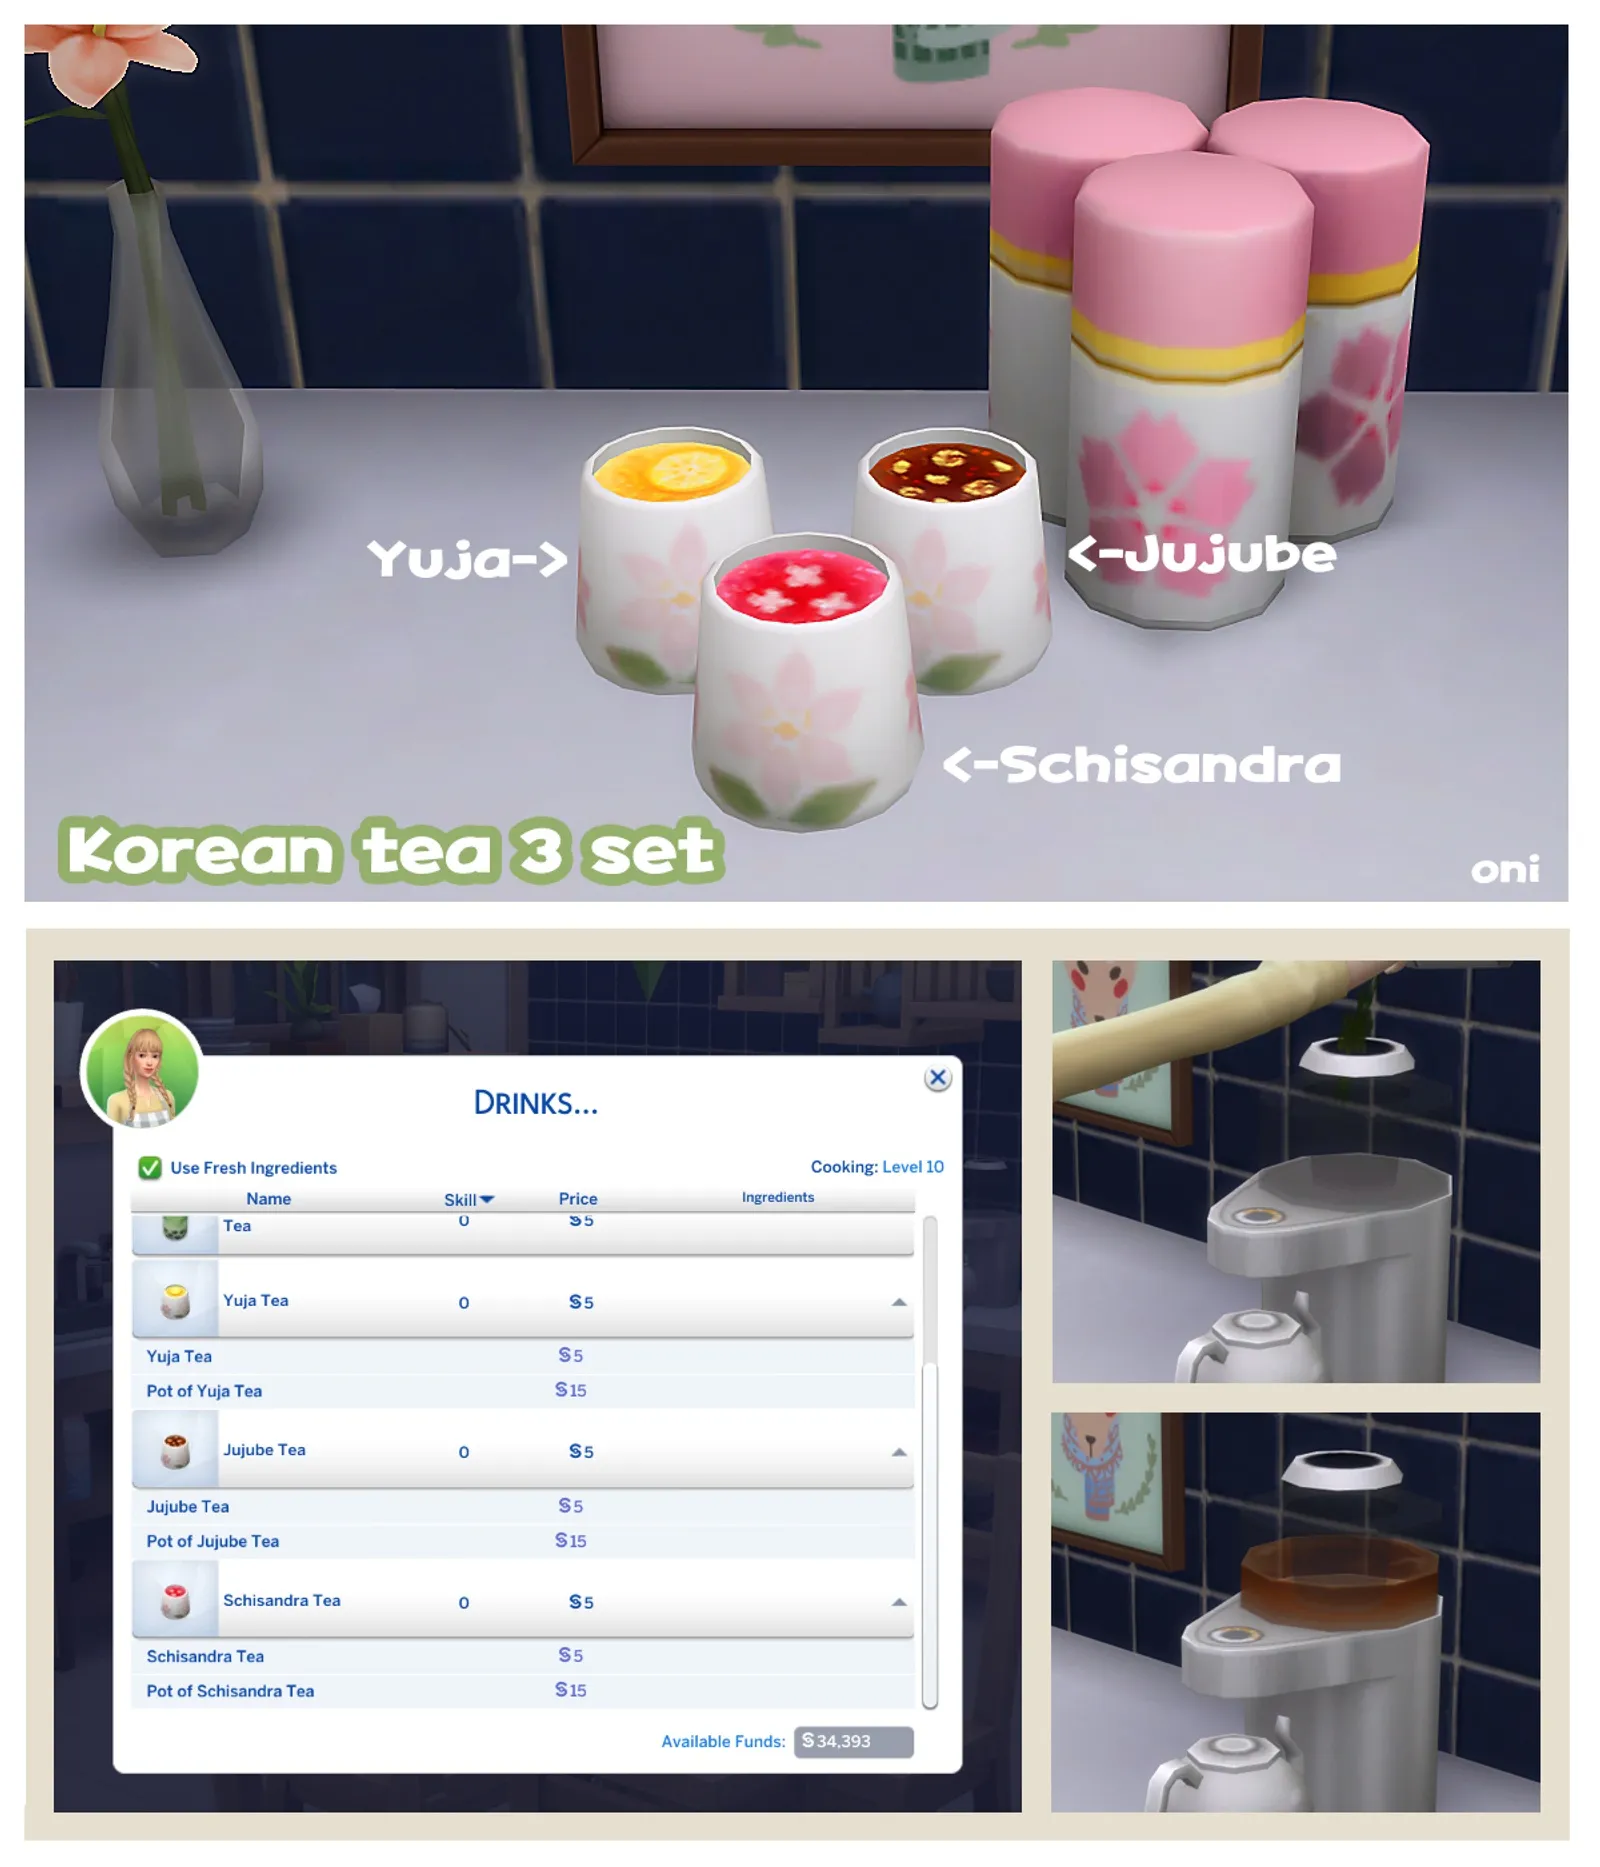 Korean tea 3 set